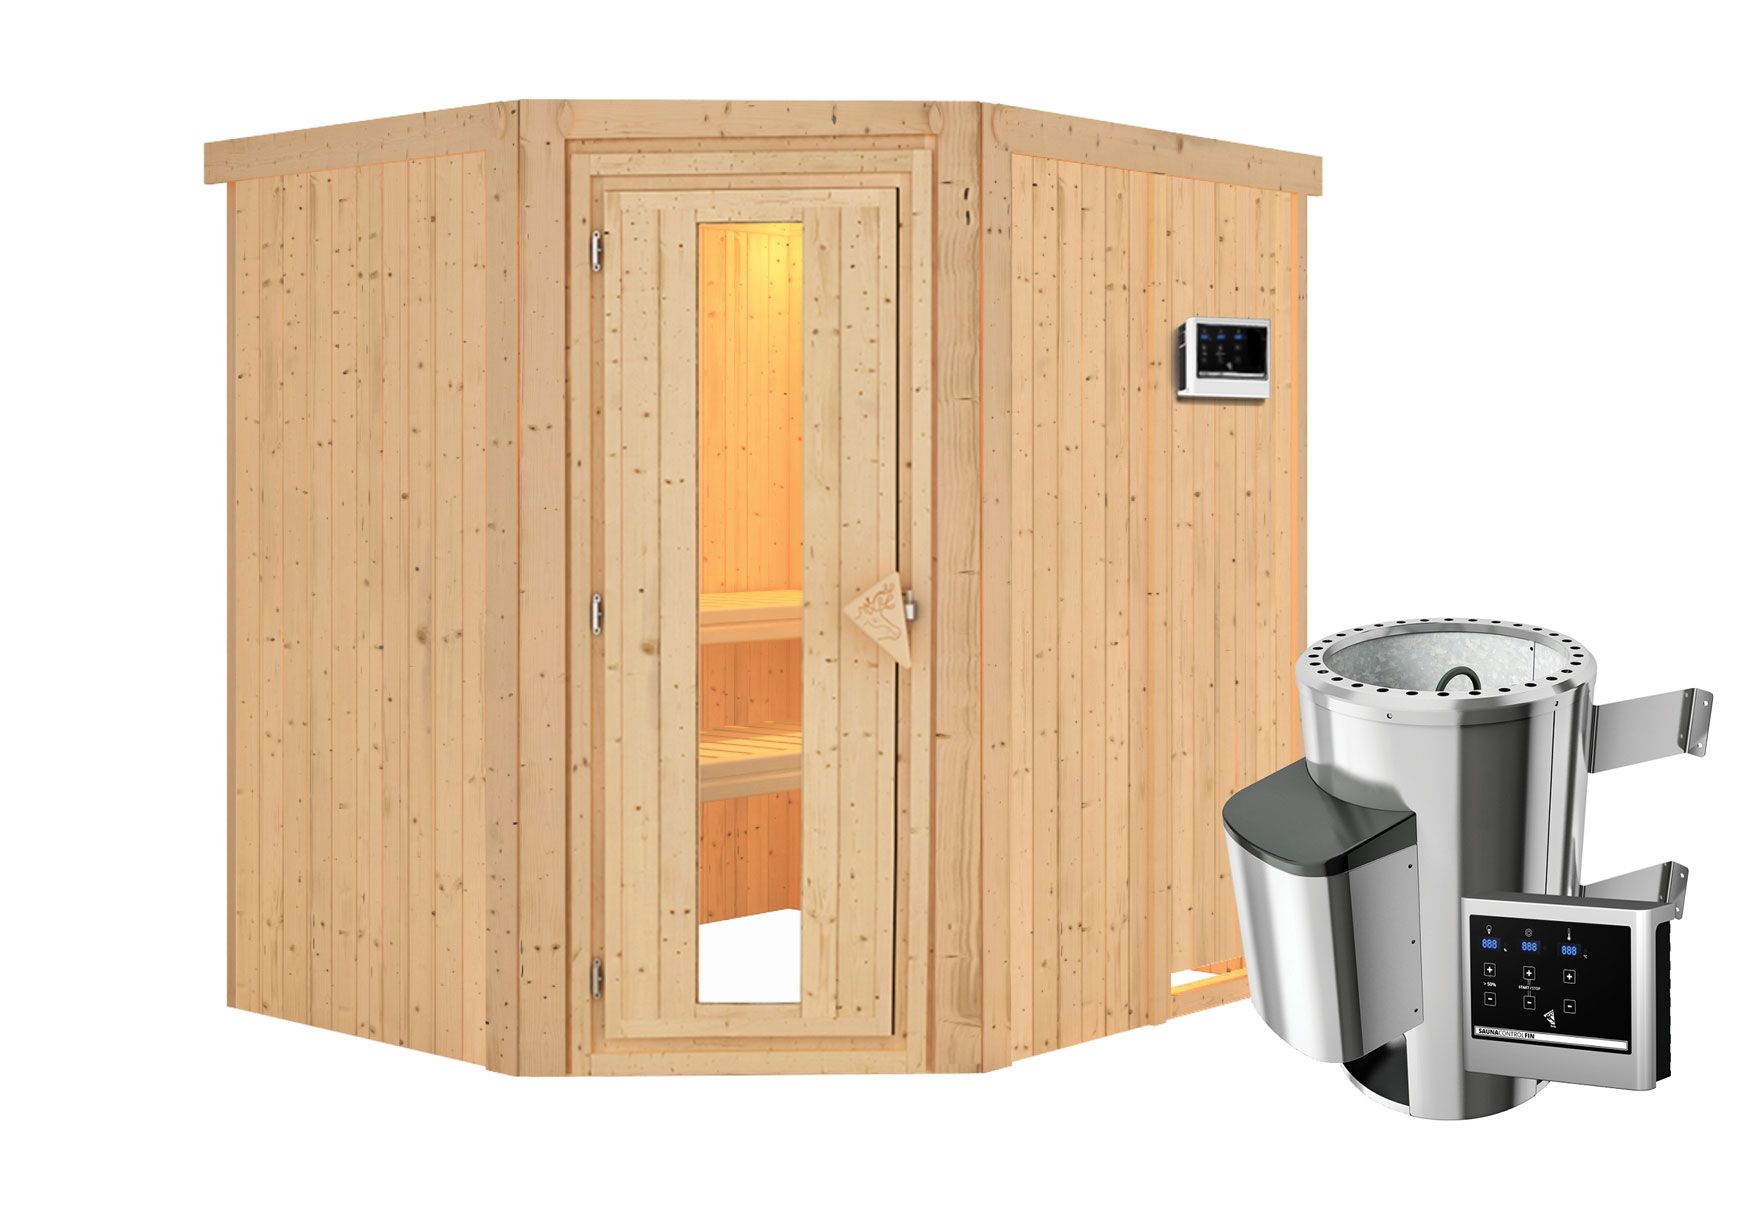 Sauna "Askjell" SET met energiebesparende deur - kleur: naturel, kachel externe regeling eenvoudig 3,6 kW - 196 x 170 x 198 cm (B x D x H)